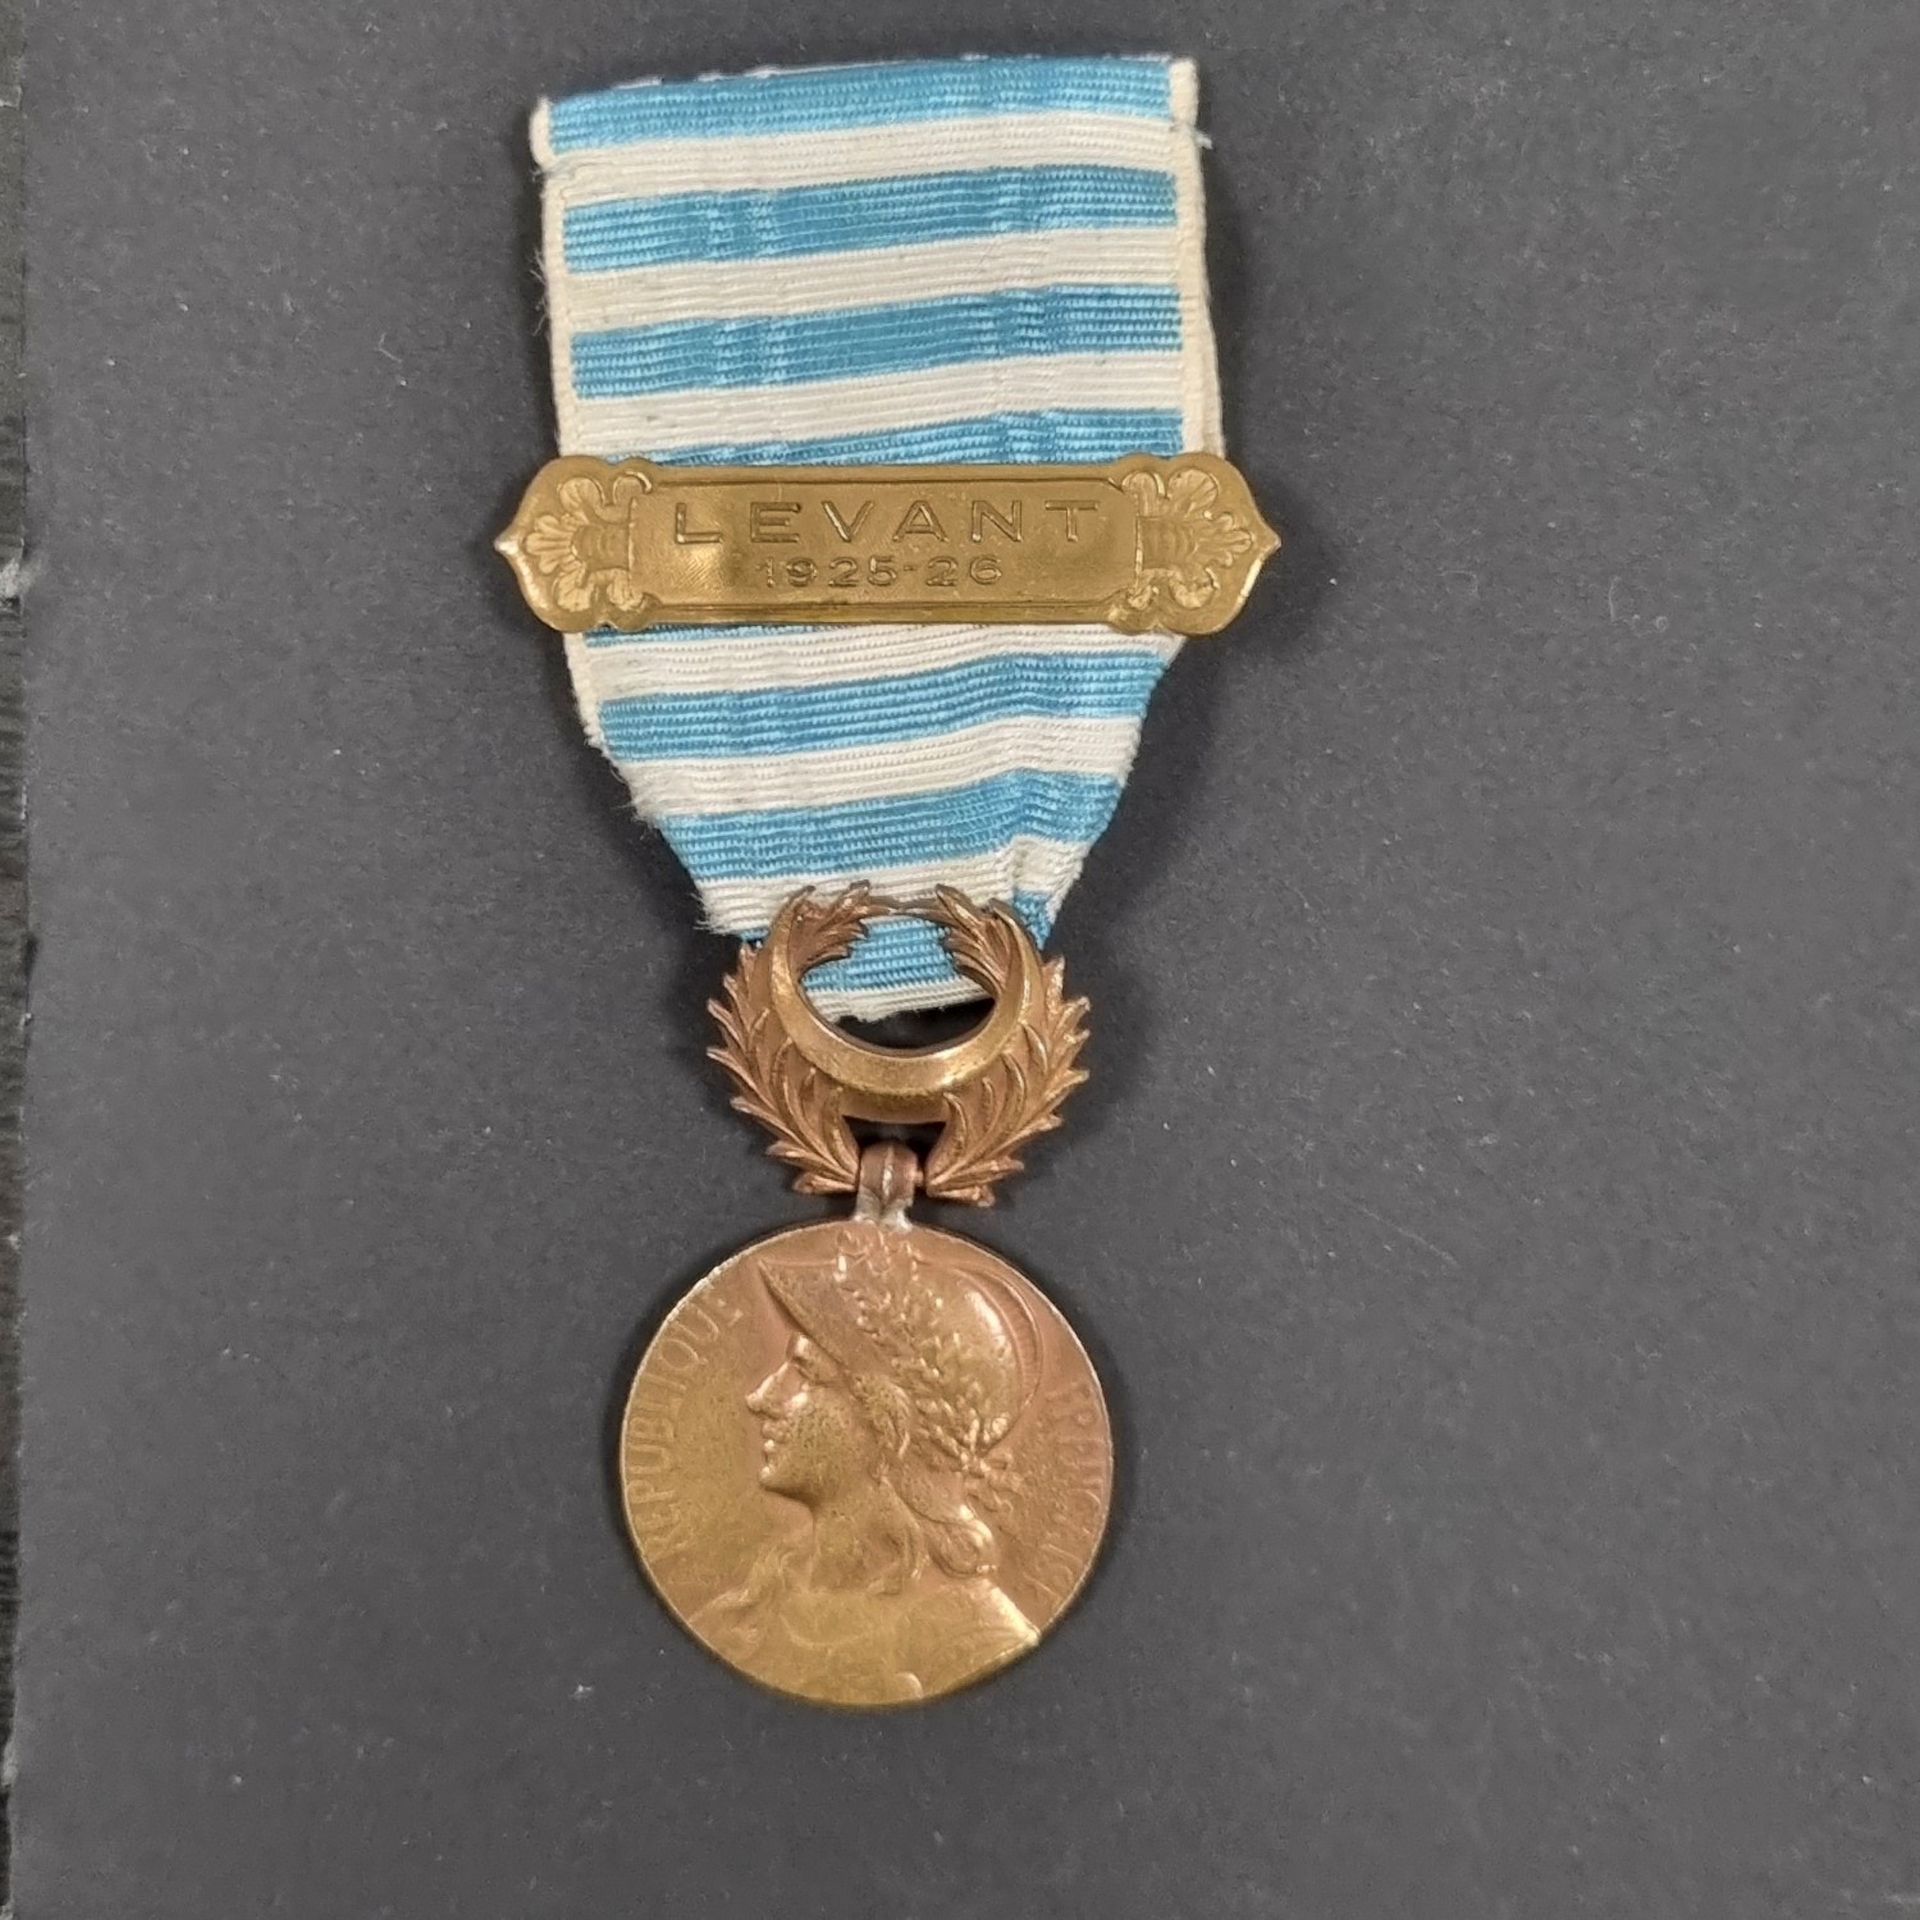 Null FRANCIA 
MEDALLA DE LEVANT (1922)
Medalla de bronce (burbujas), reparación &hellip;